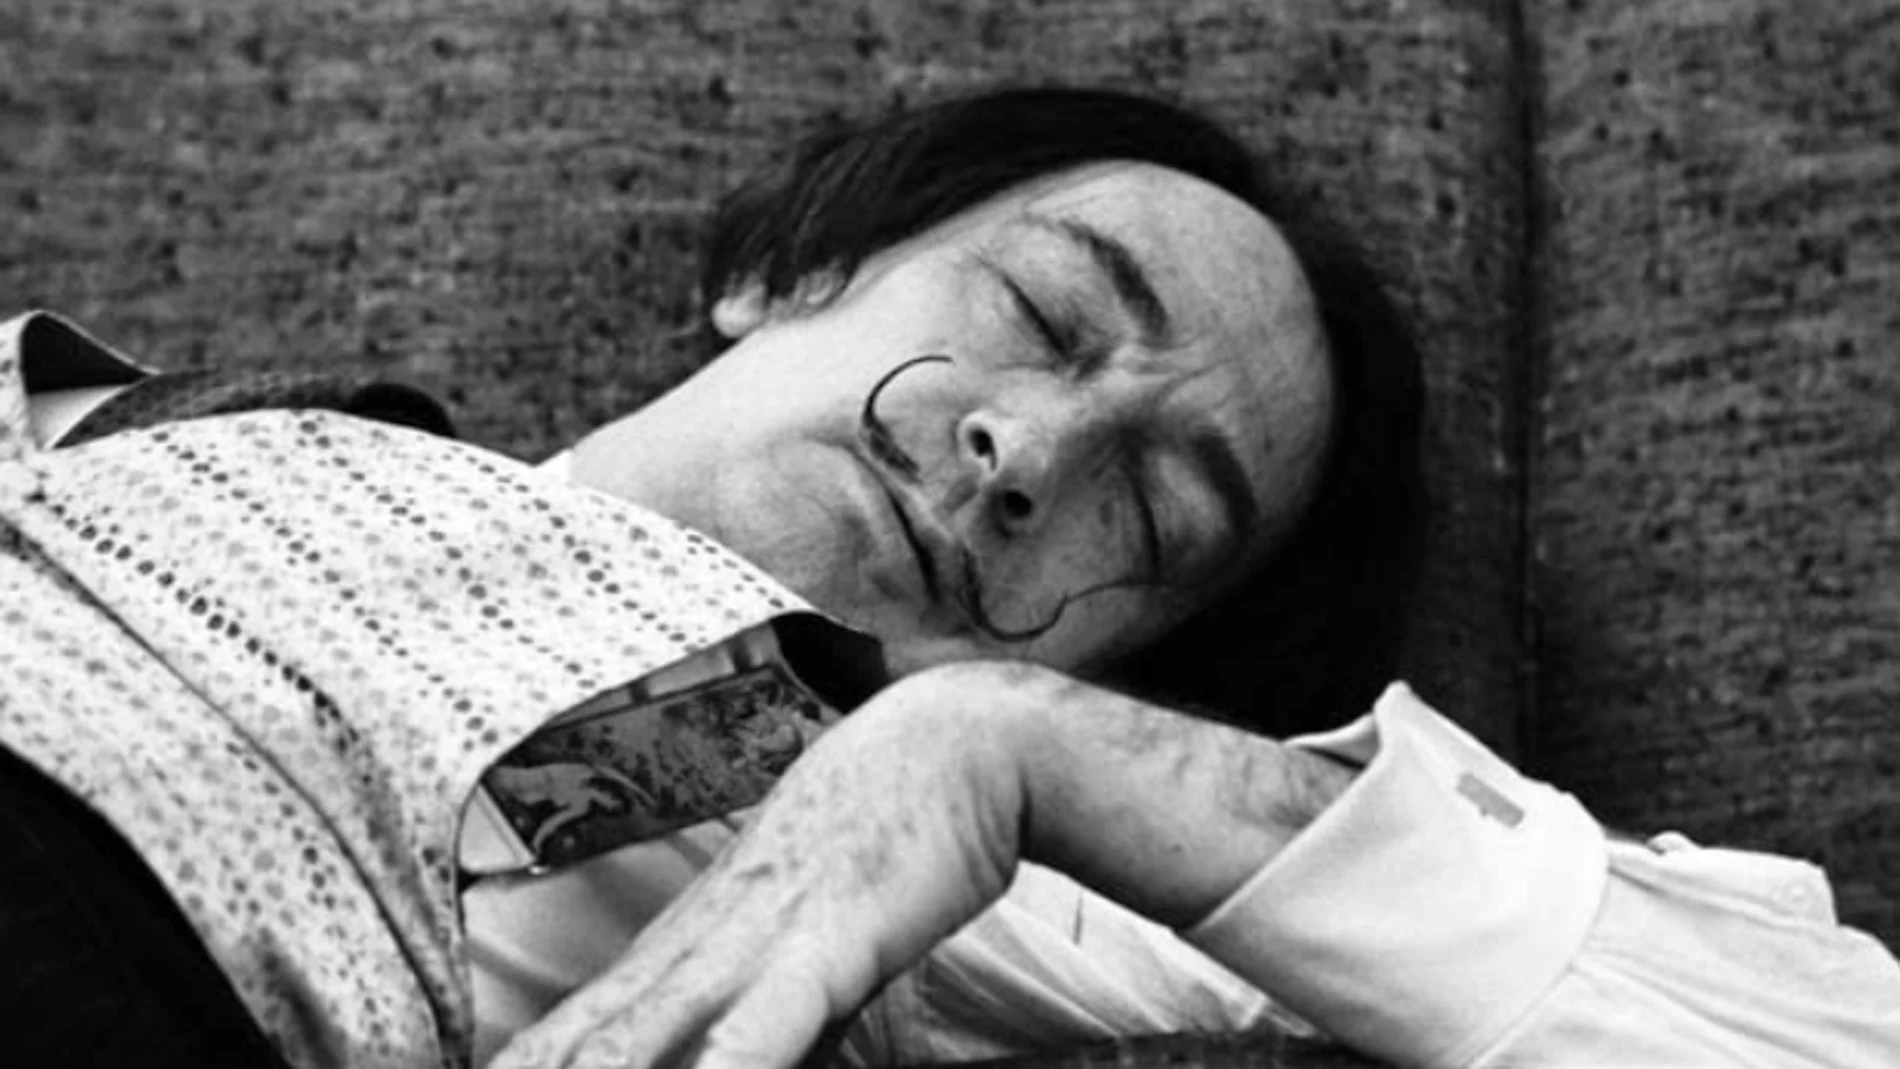 La siesta de Dalí ha desmostrado ser un verdadero potenciador de la creatividad